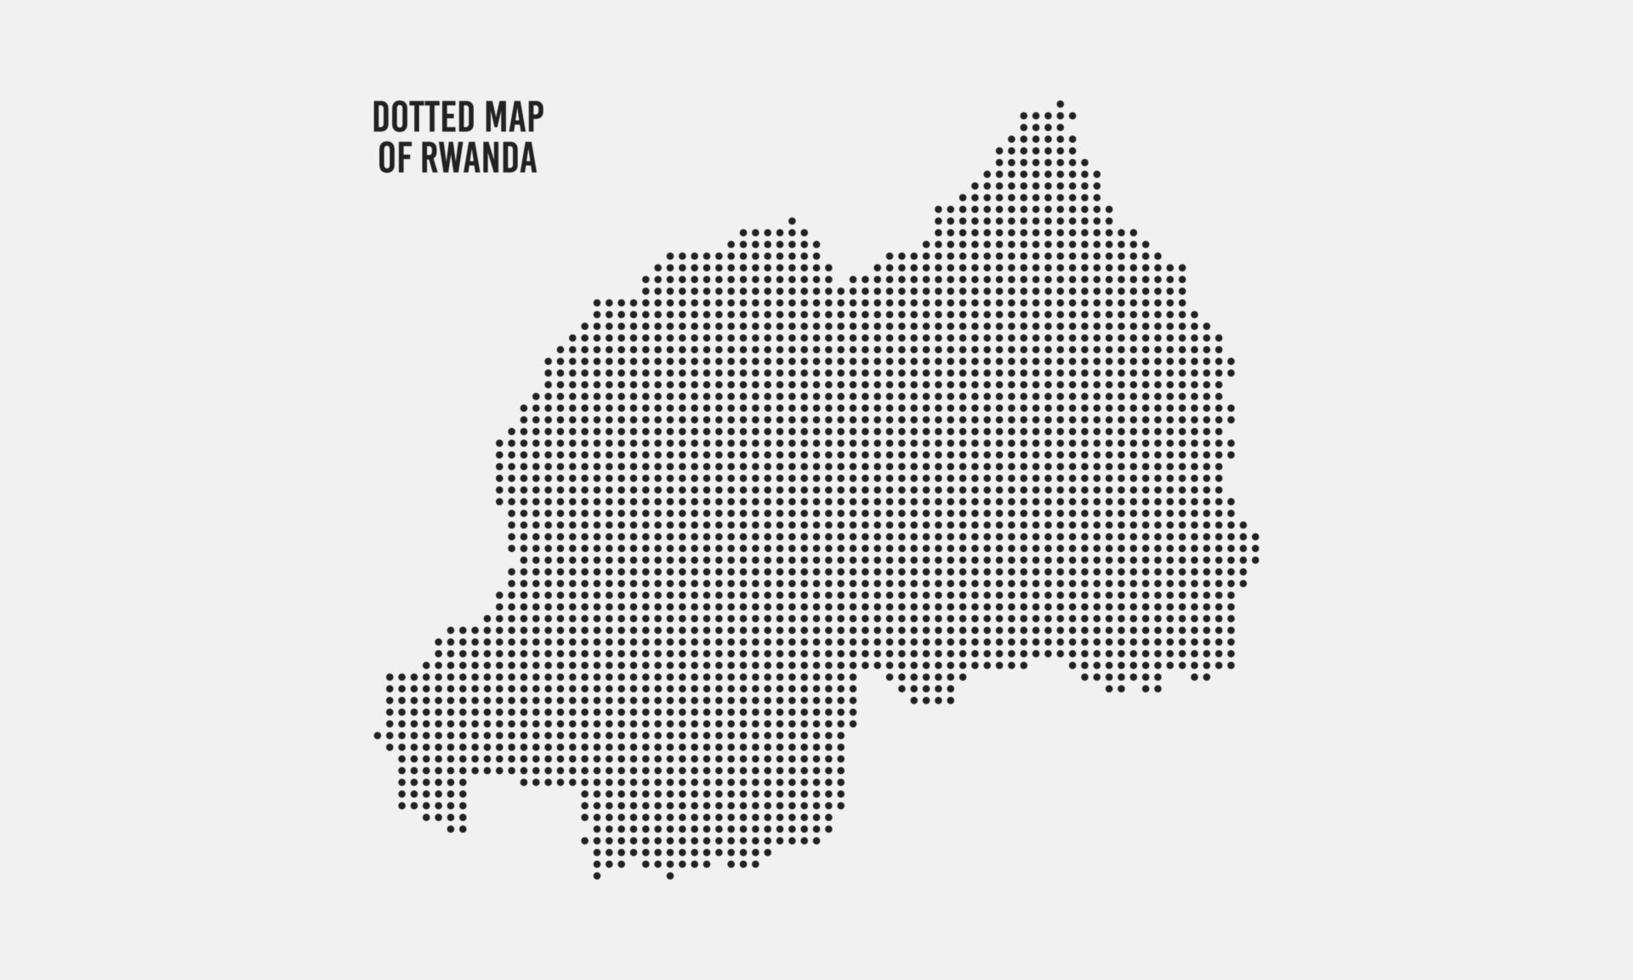 Abstract Dotted Rwanda Map vector